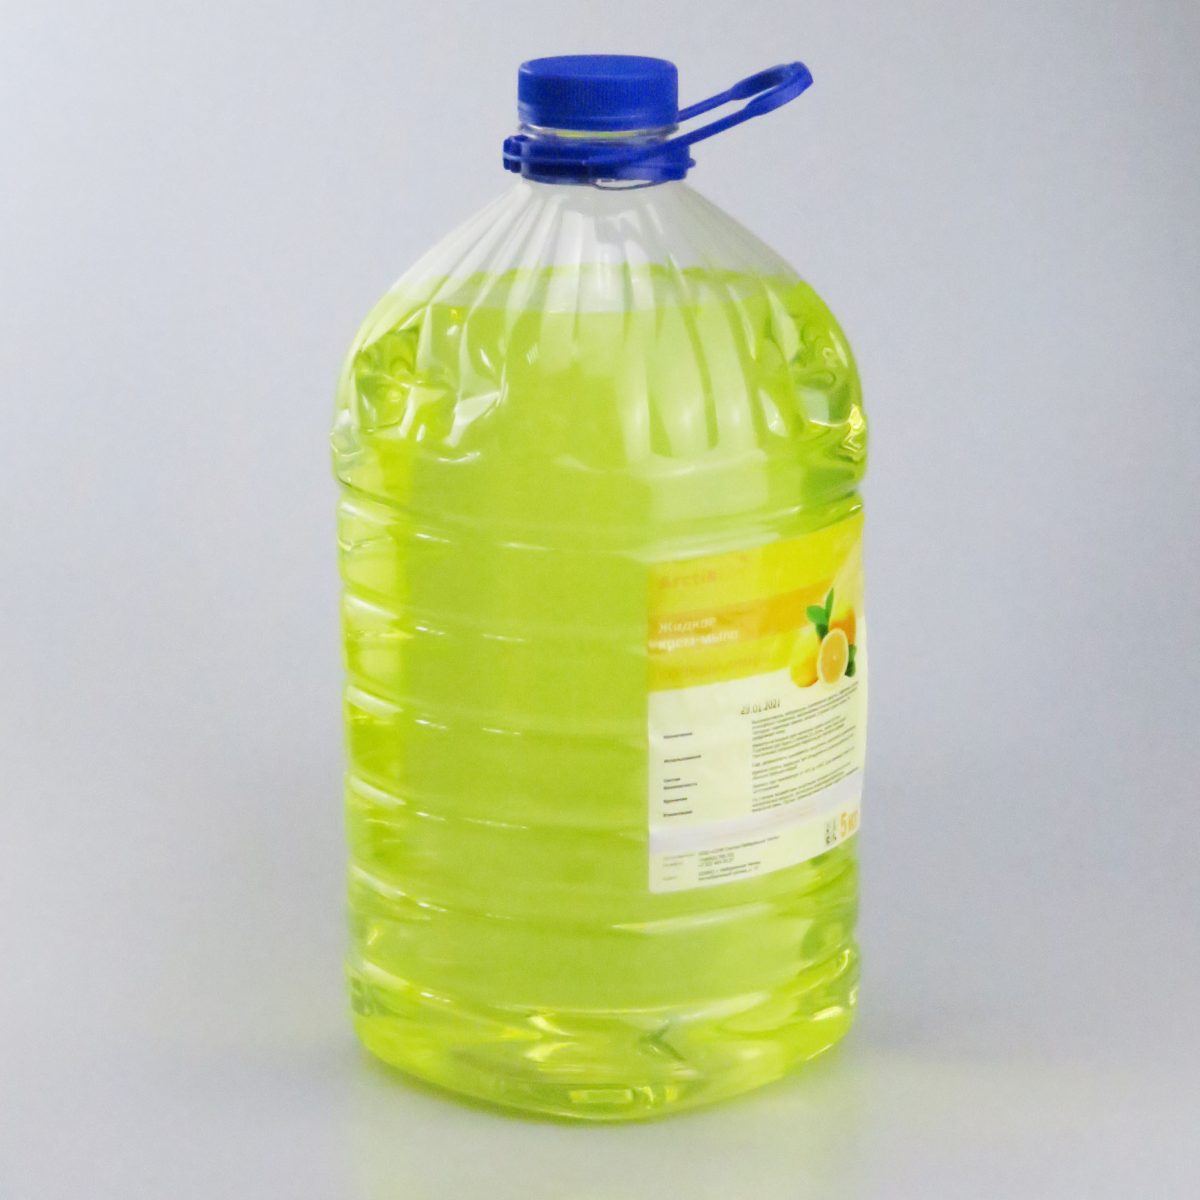 Жидкое крем-мыло "М-070" ПЭТ 5кг лимон